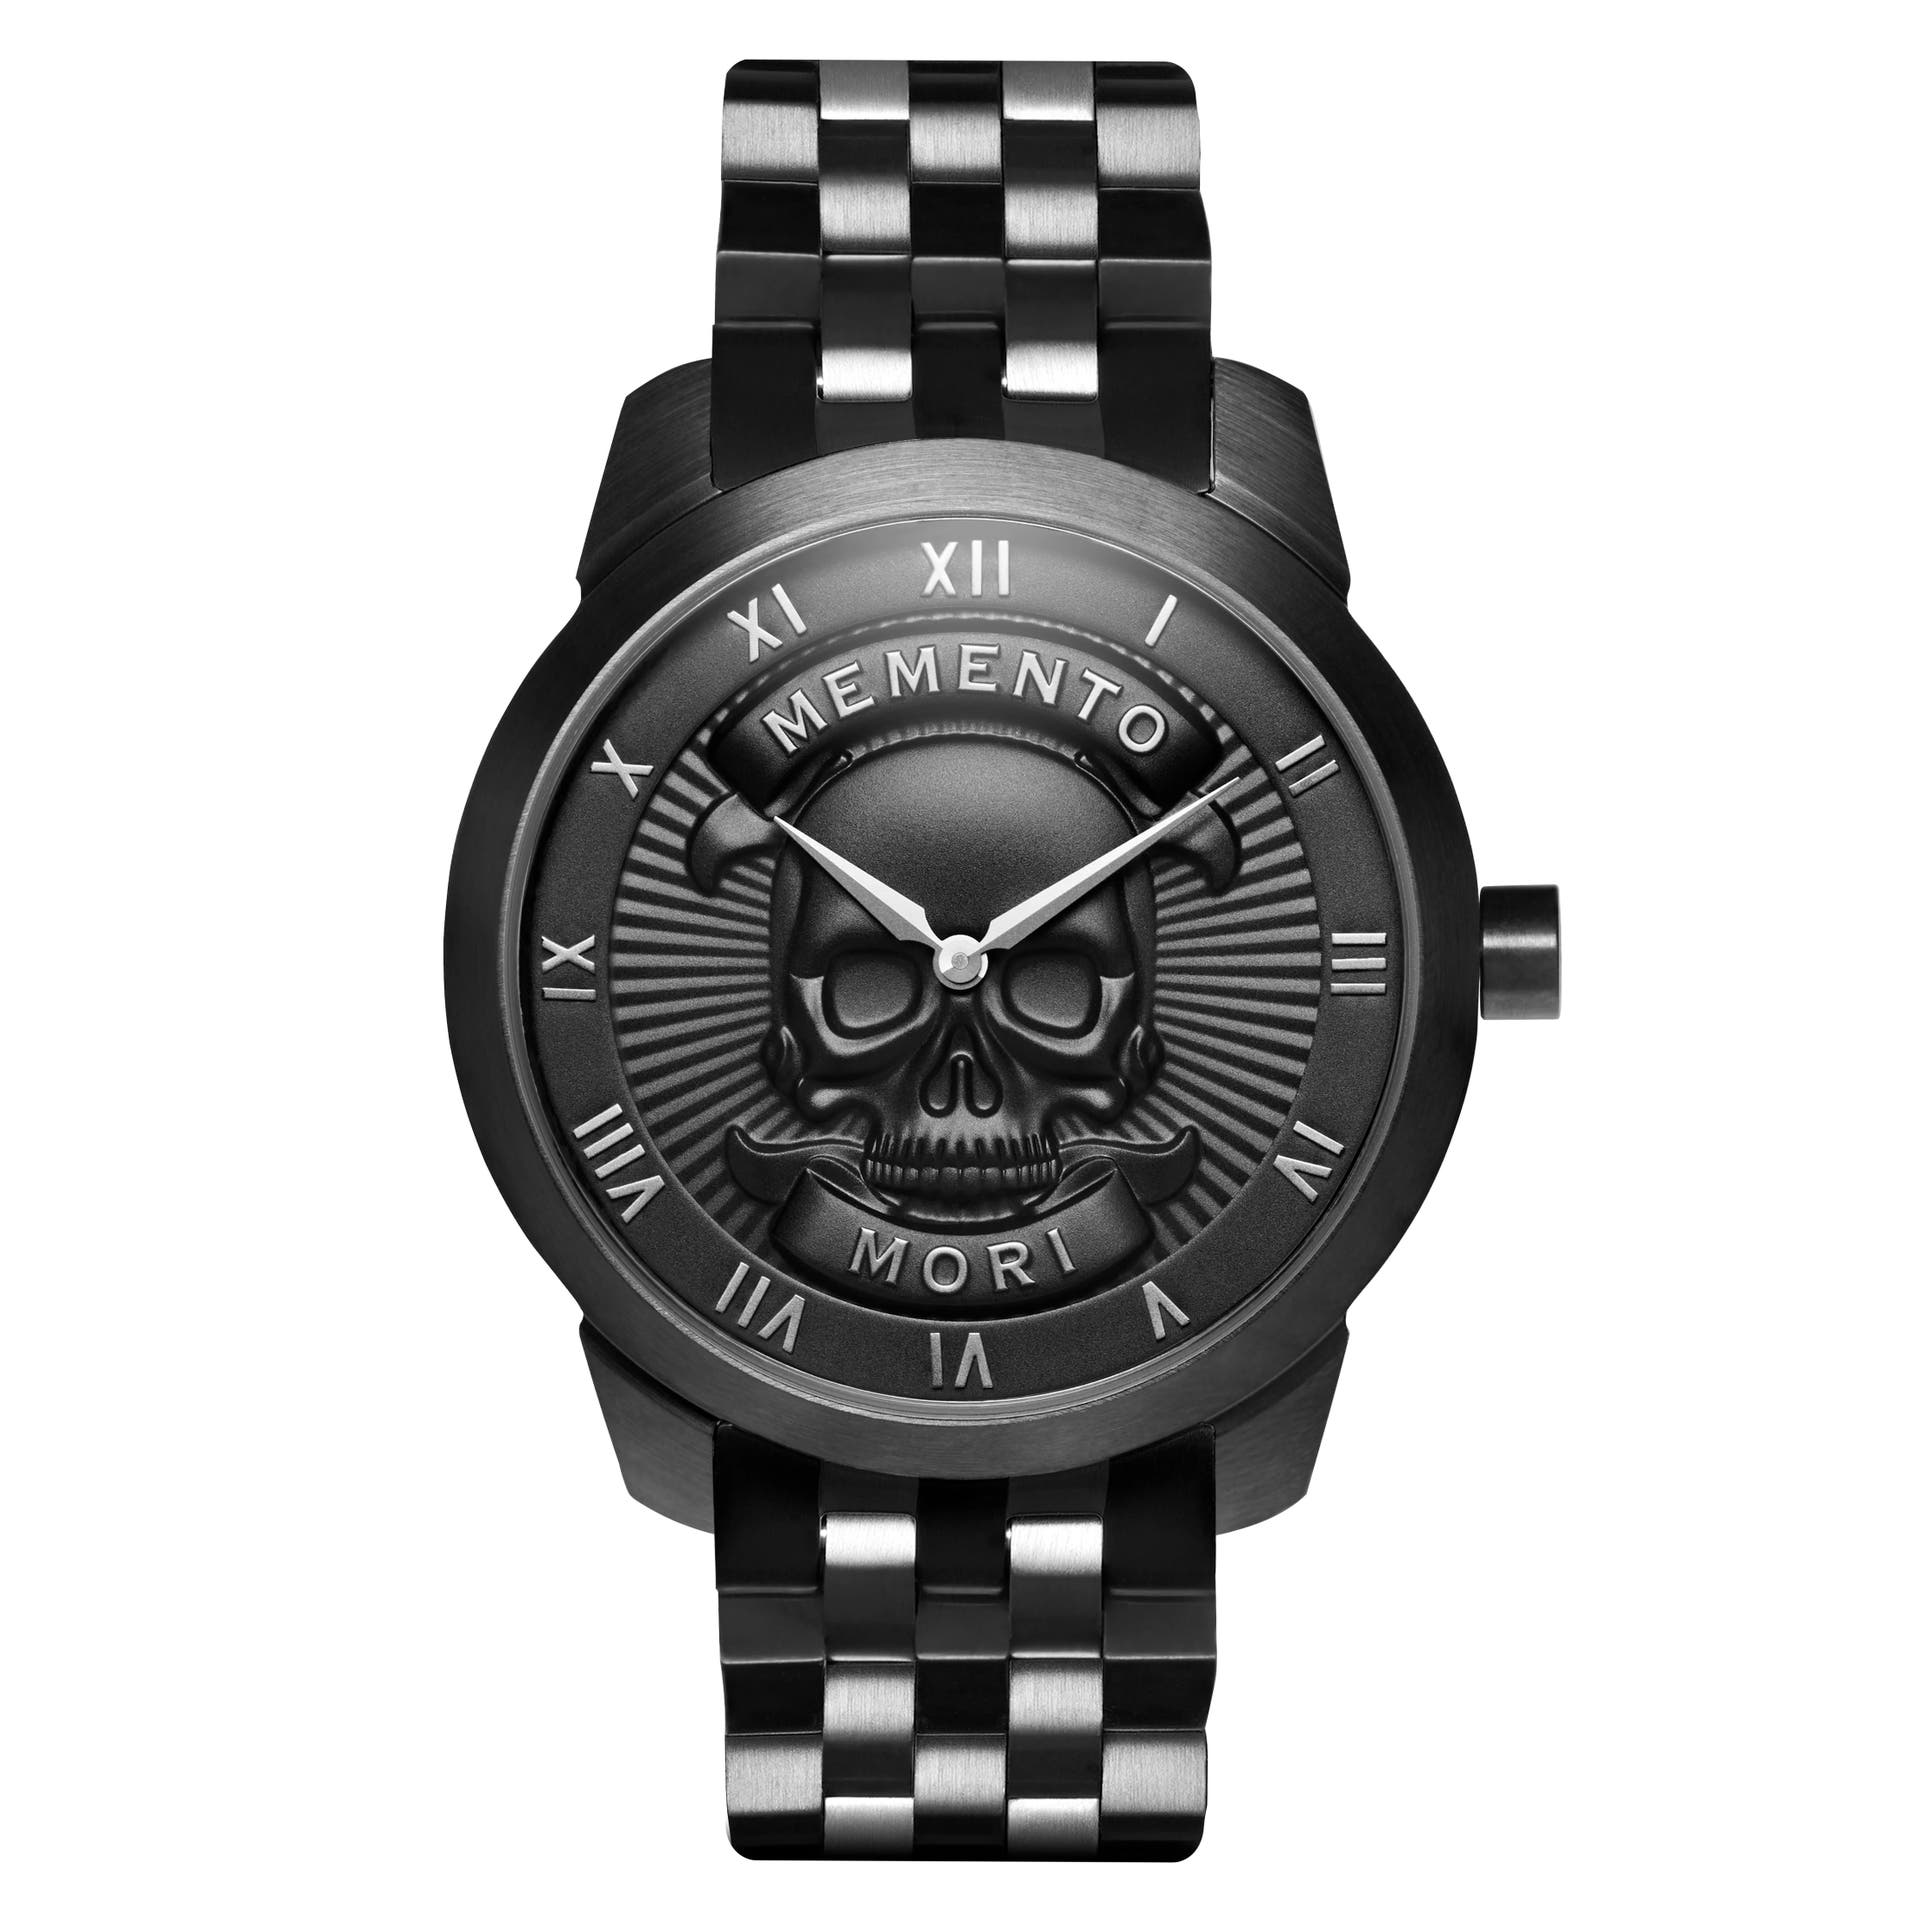 Men's watches | 405 Styles for men in stock